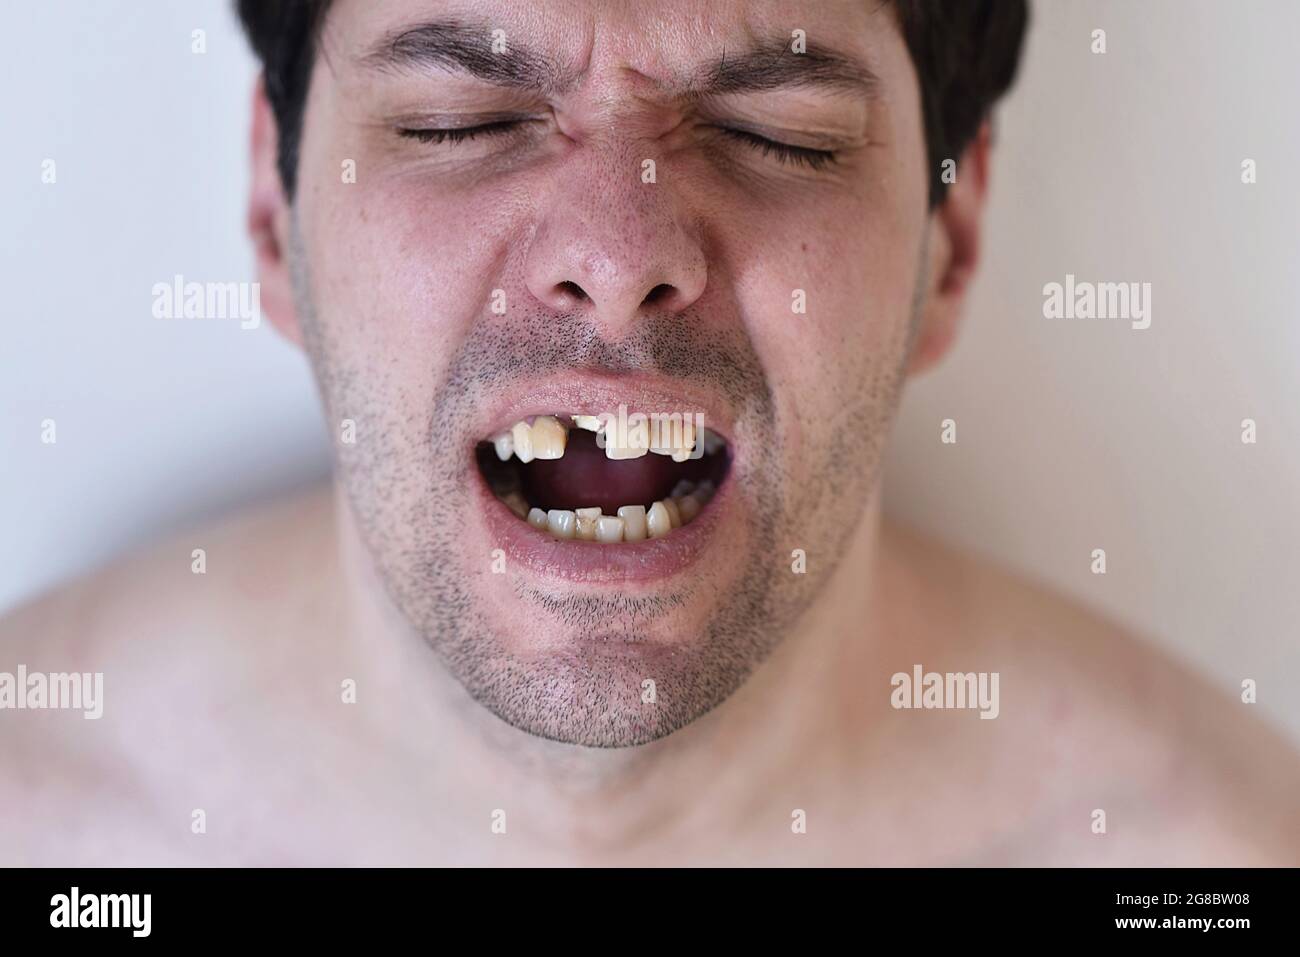 ritratto di un uomo con denti rotti Foto Stock